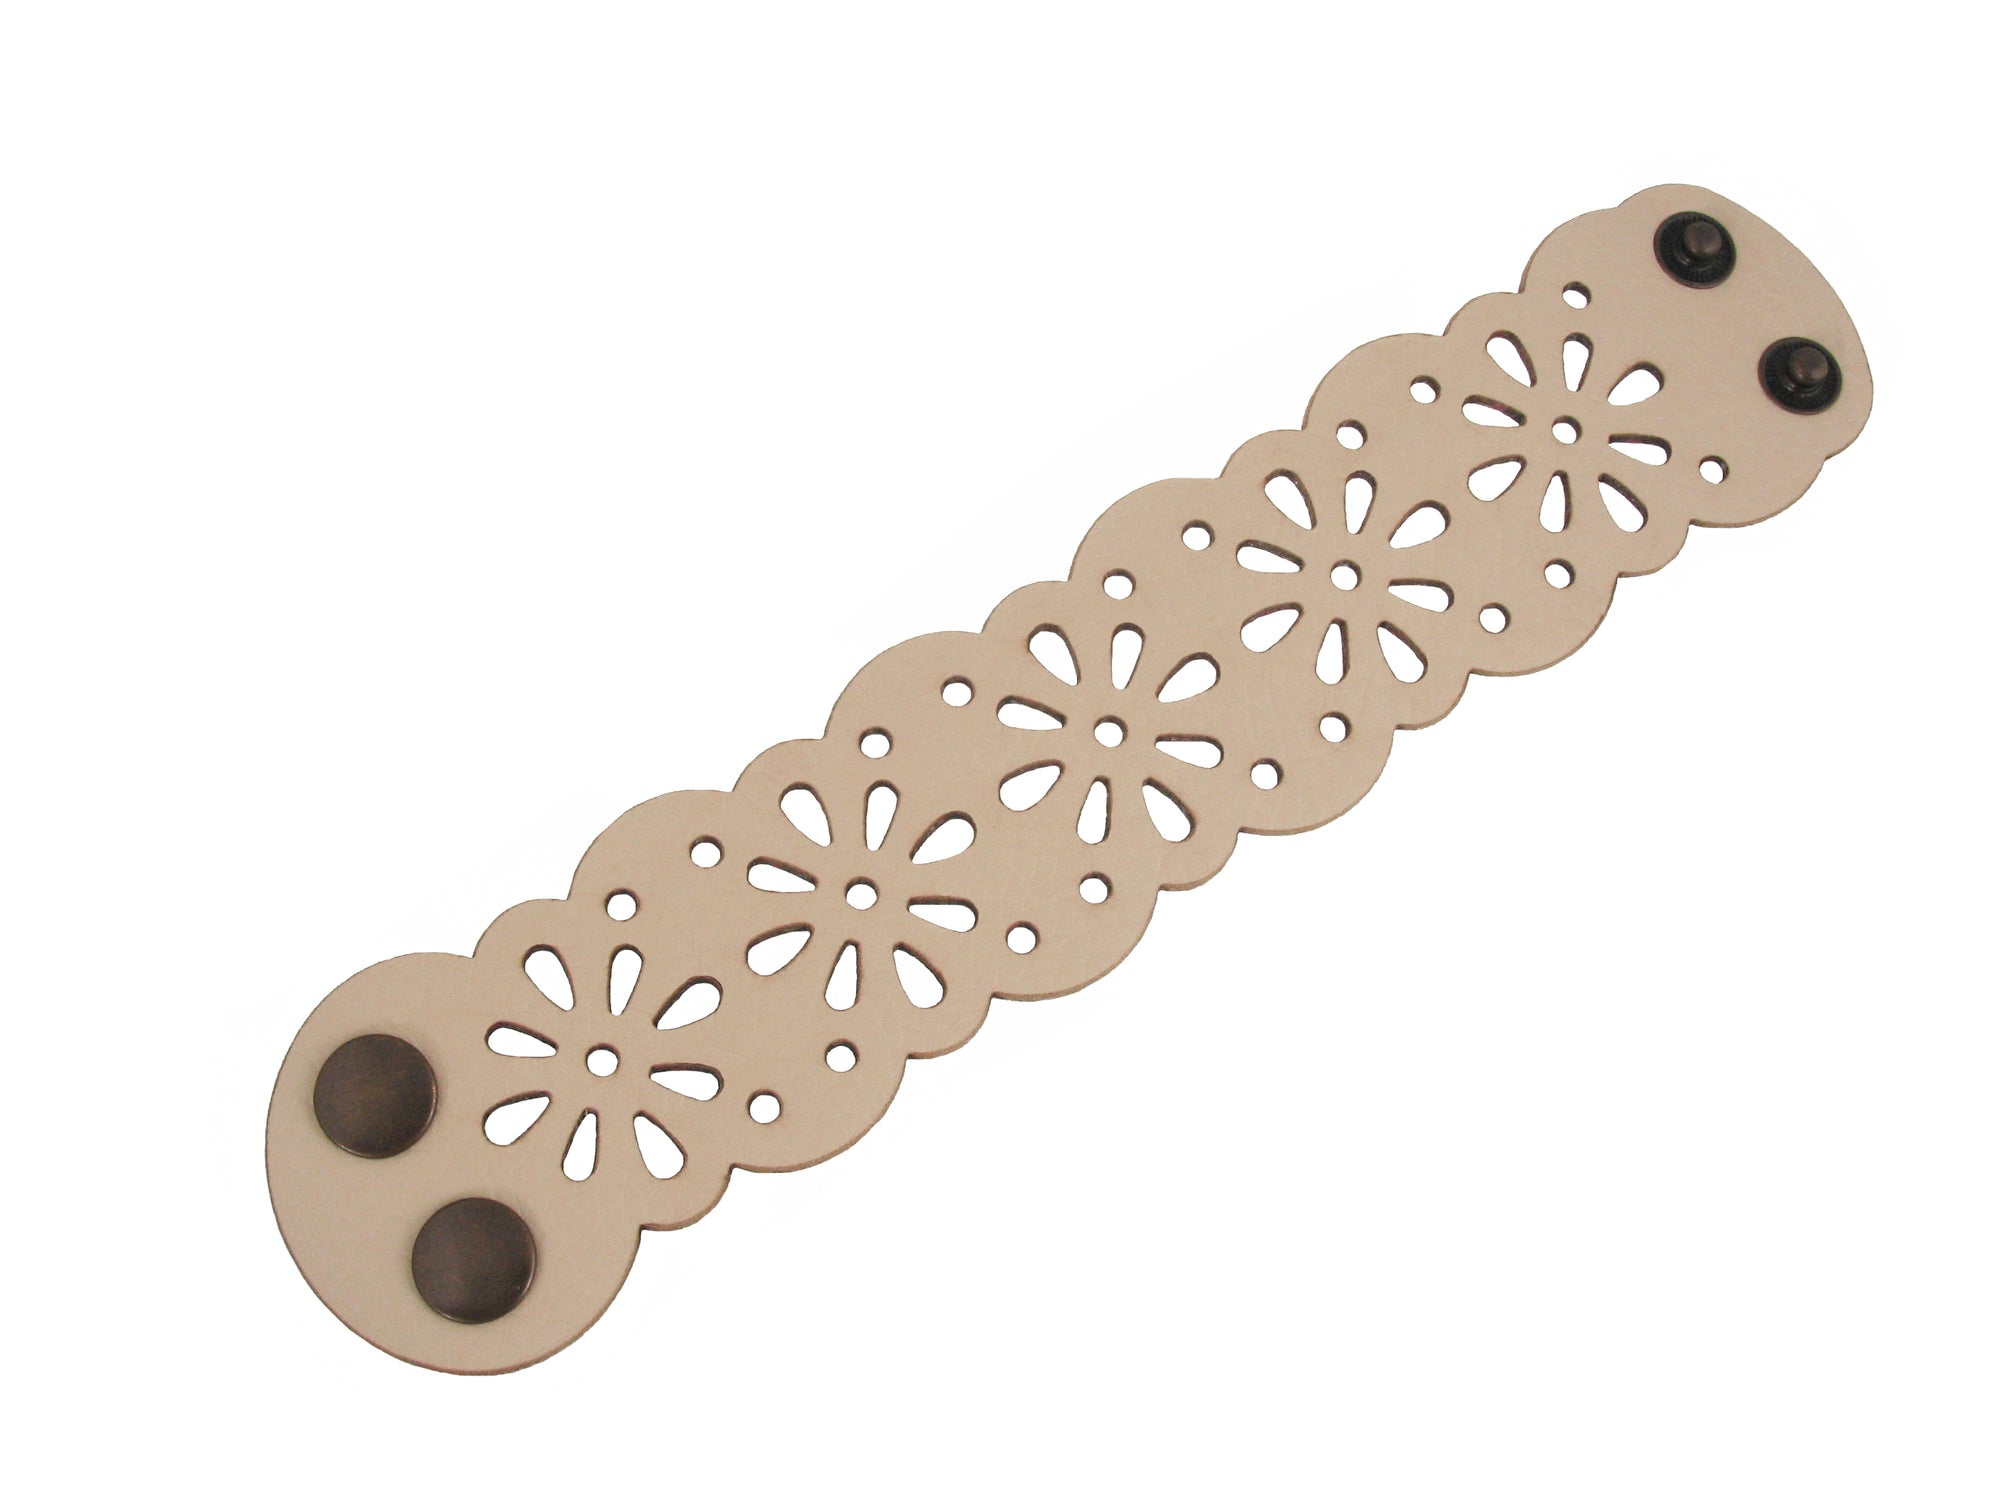 Laser Cut Leather Bracelet | Flower Power Pattern | Erica Zap Designs